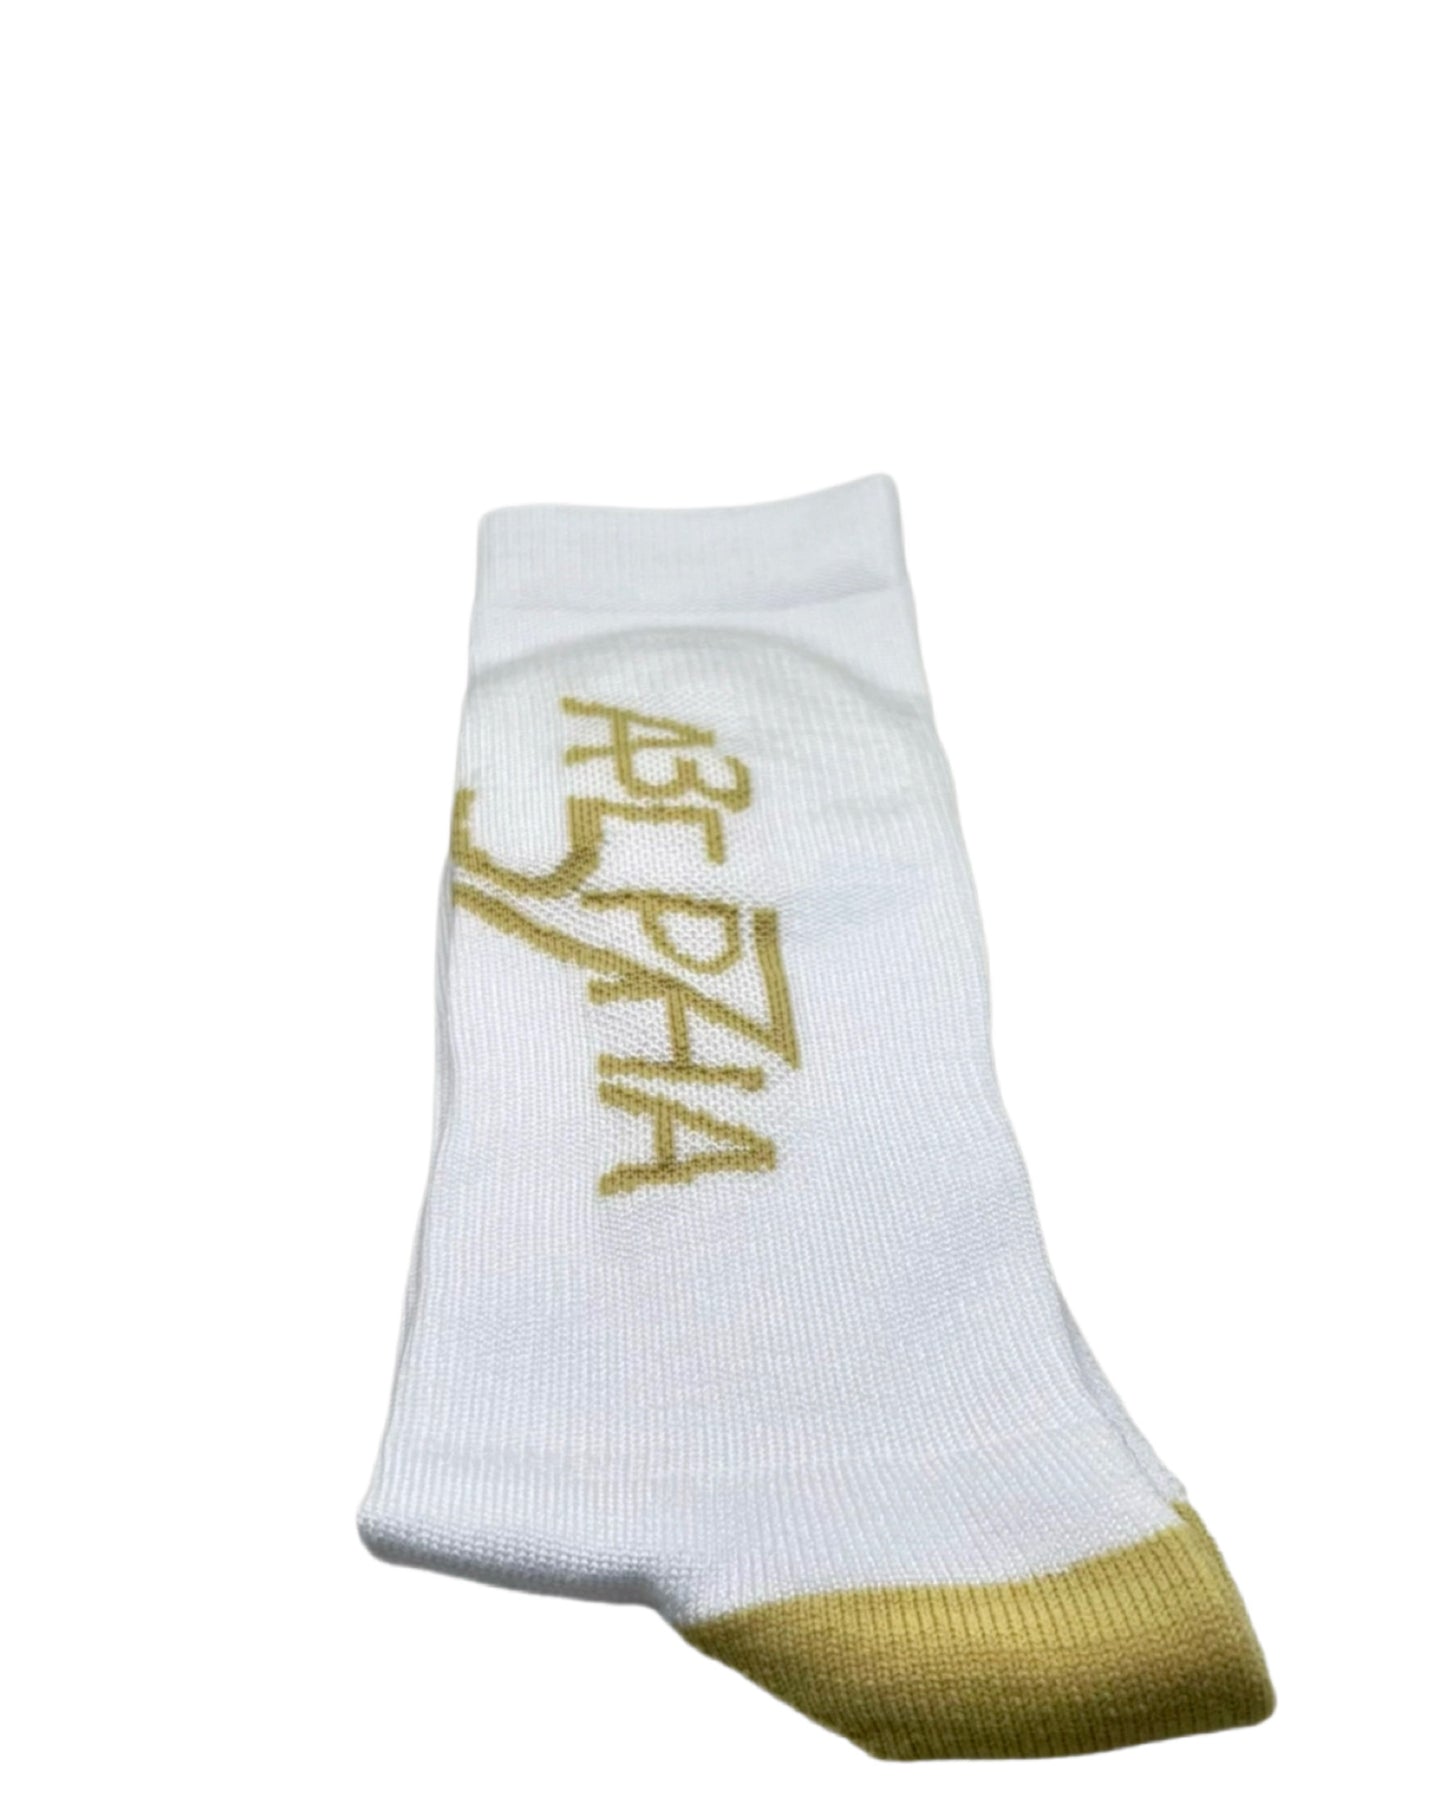 AAHLPHA Logo Socks